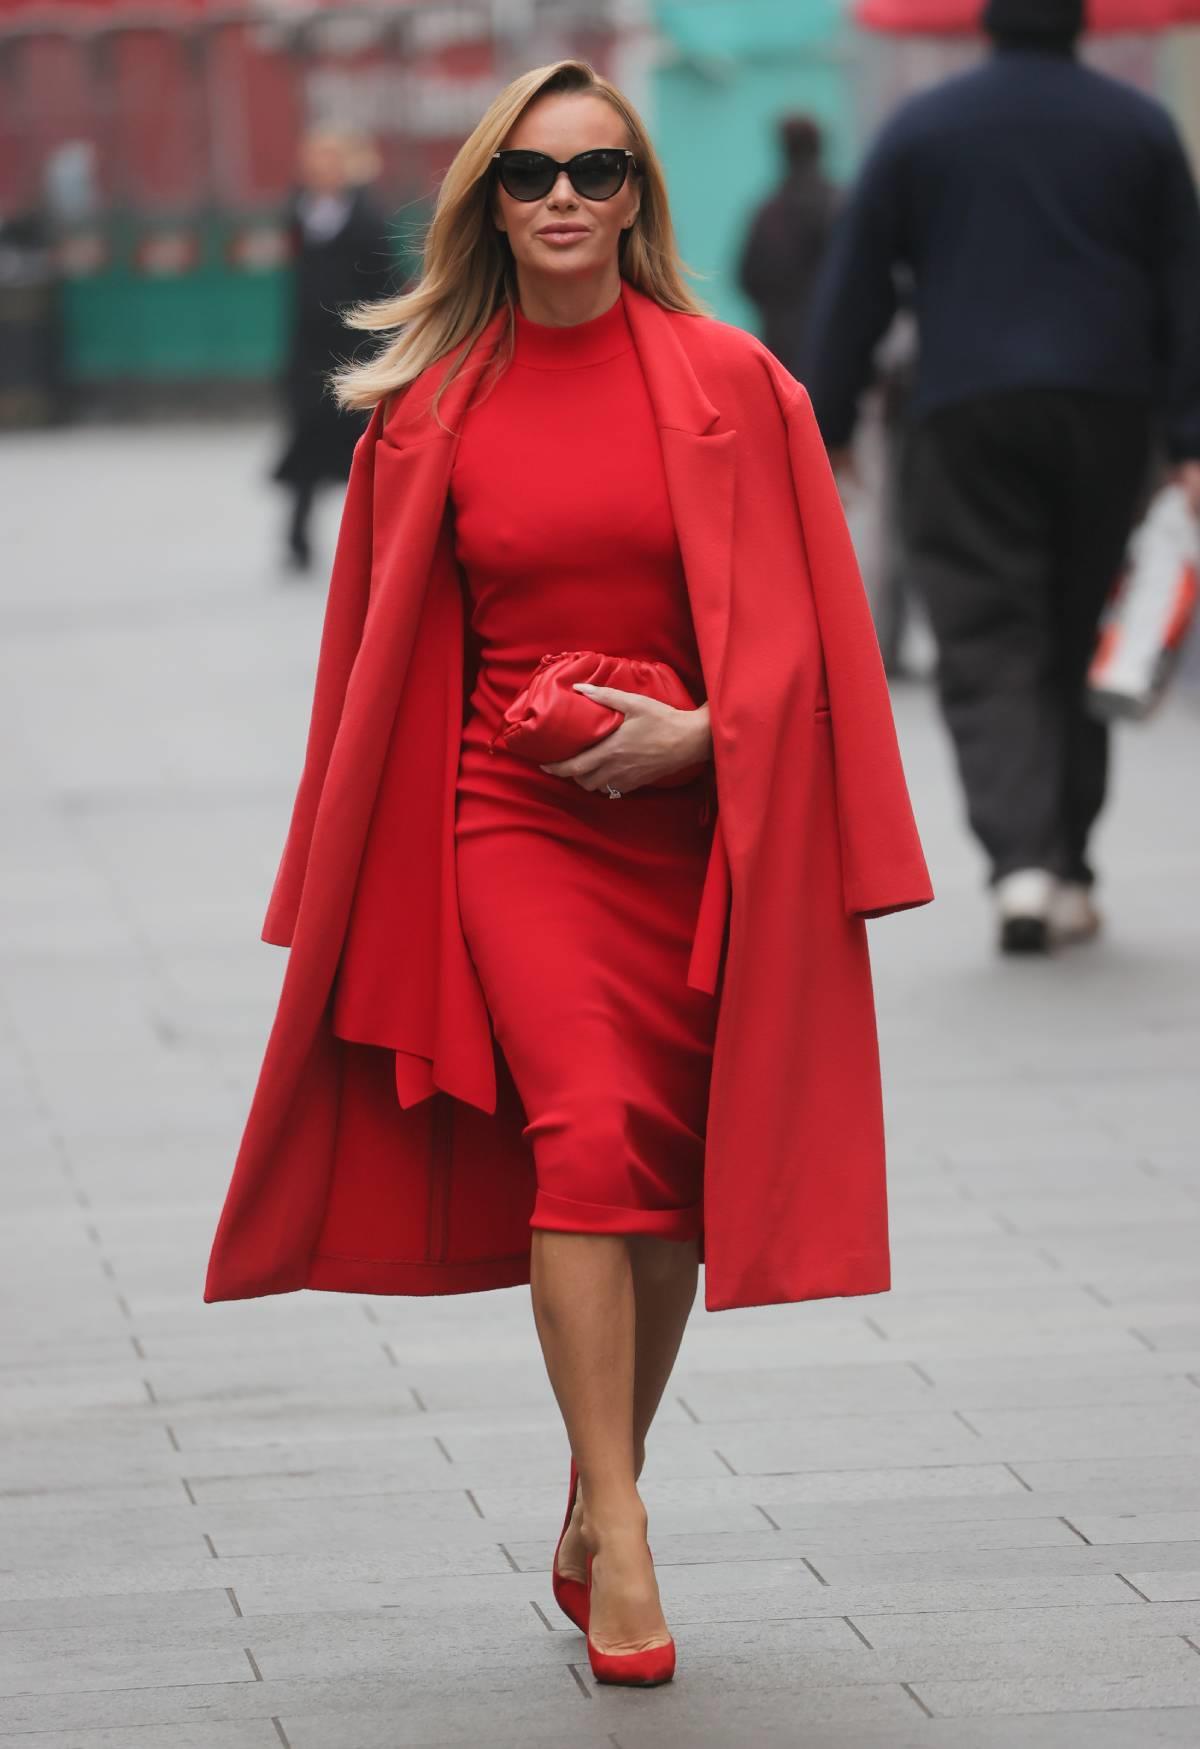 Procesando vulgar Albany Cómo combinar un vestido rojo: bolso, zapatos, joyas y otros complementos